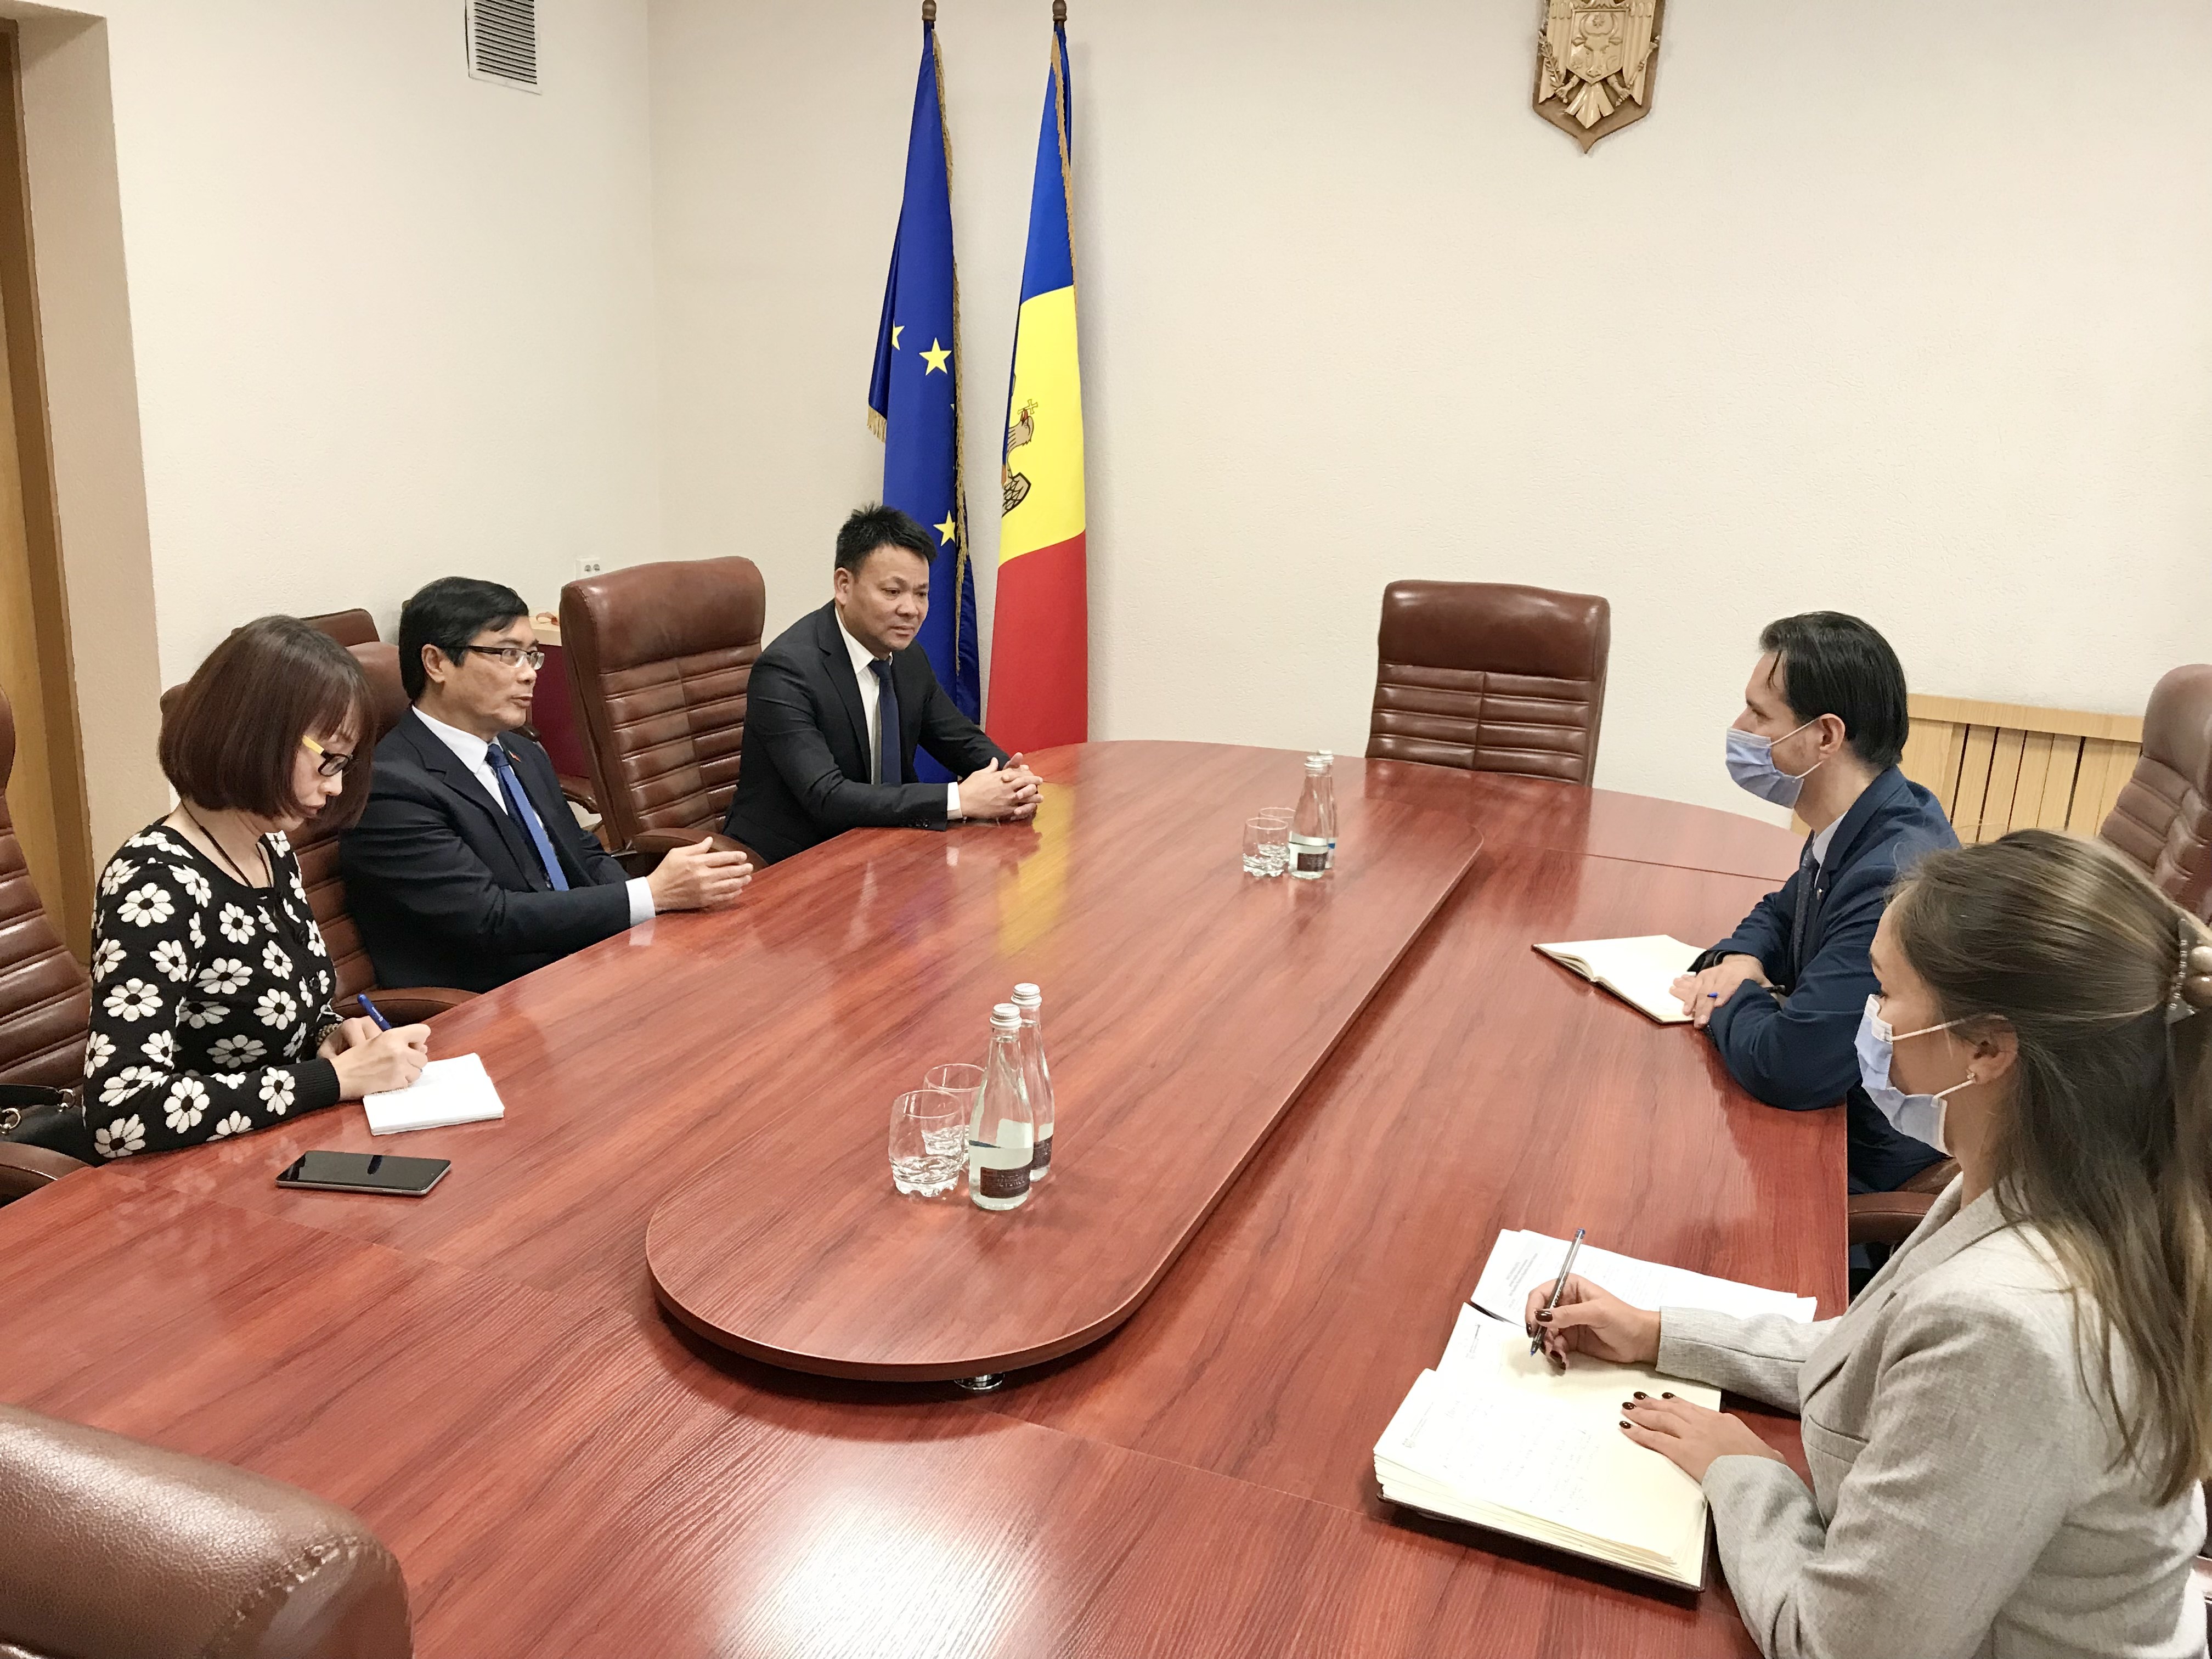 Đại sứ Nguyễn Hồng Thạch làm việc với các bộ ngành Moldova